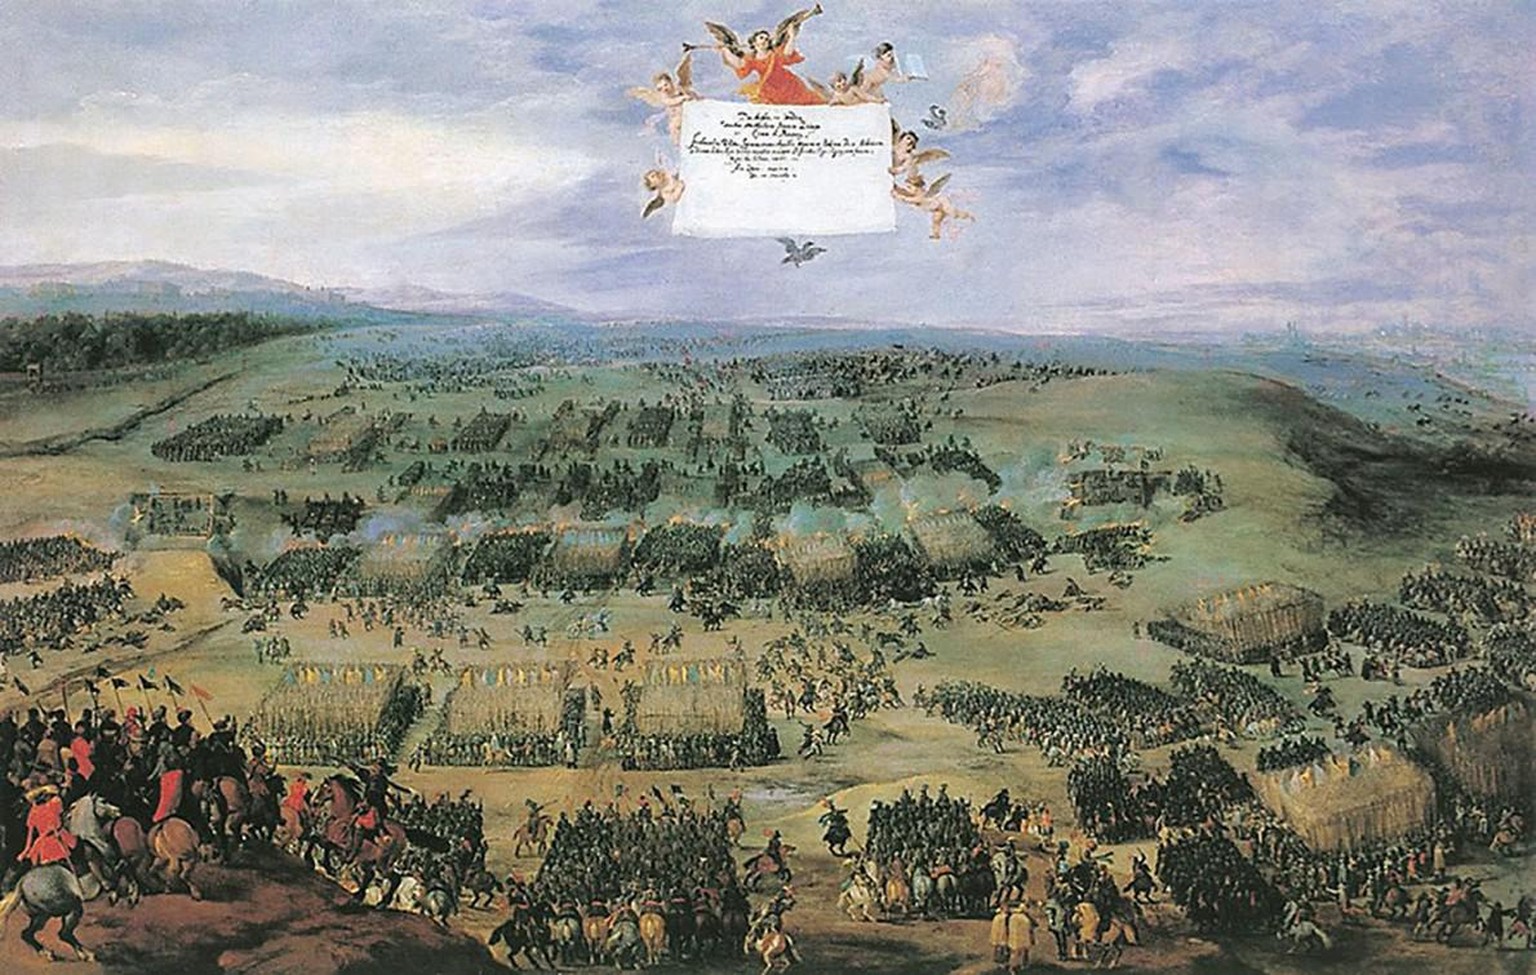 Die Schlacht am Weissen Berg, Gemälde von Peter Snayers, 1620.
https://commons.wikimedia.org/wiki/File:Schlacht_am_Wei%C3%9Fen_Berg_C-K_063.jpg